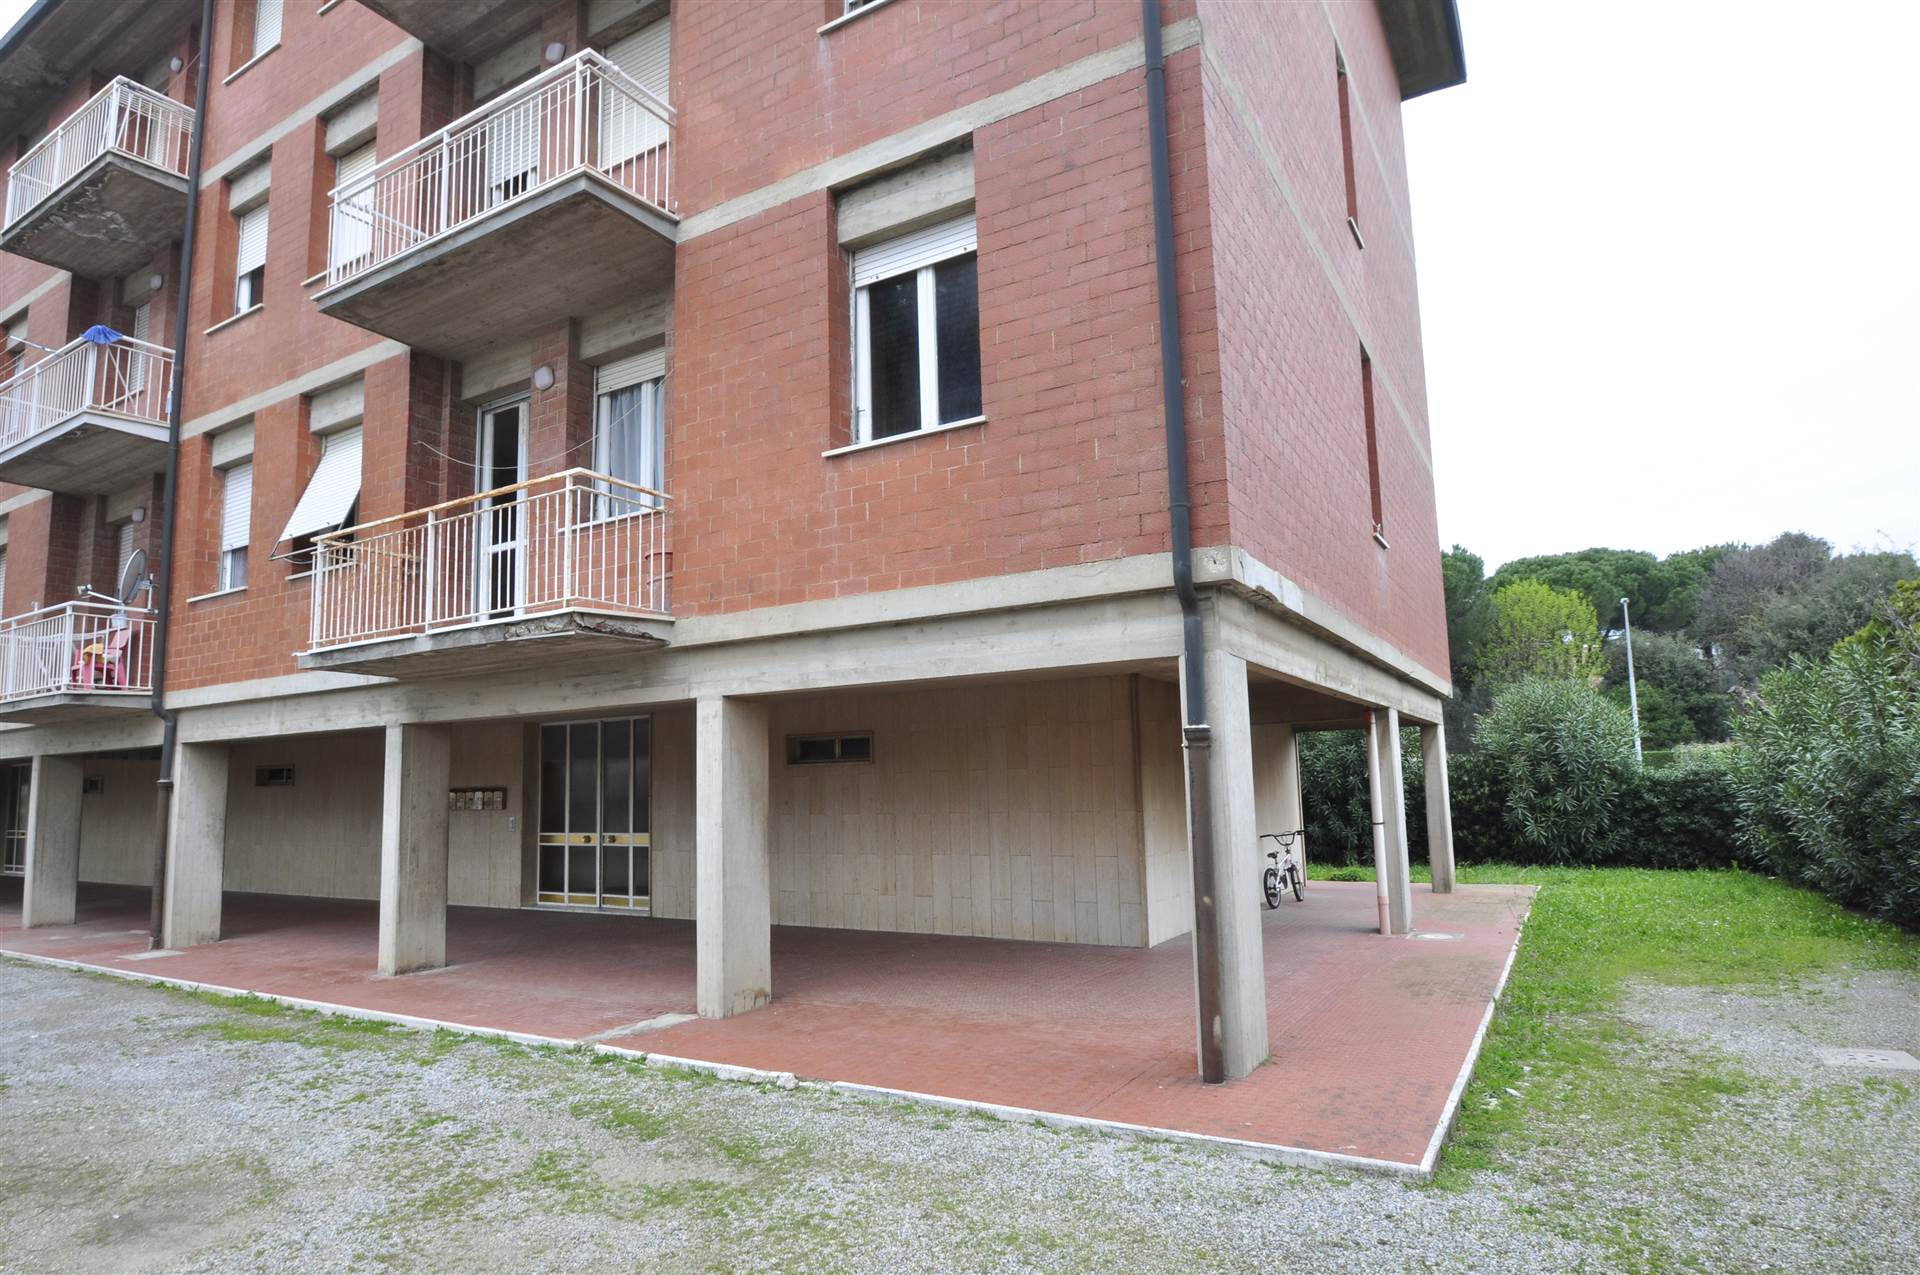 Appartamento in vendita a Campiglia Marittima, 5 locali, zona Località: VENTURINA TERME, prezzo € 110.000 | PortaleAgenzieImmobiliari.it